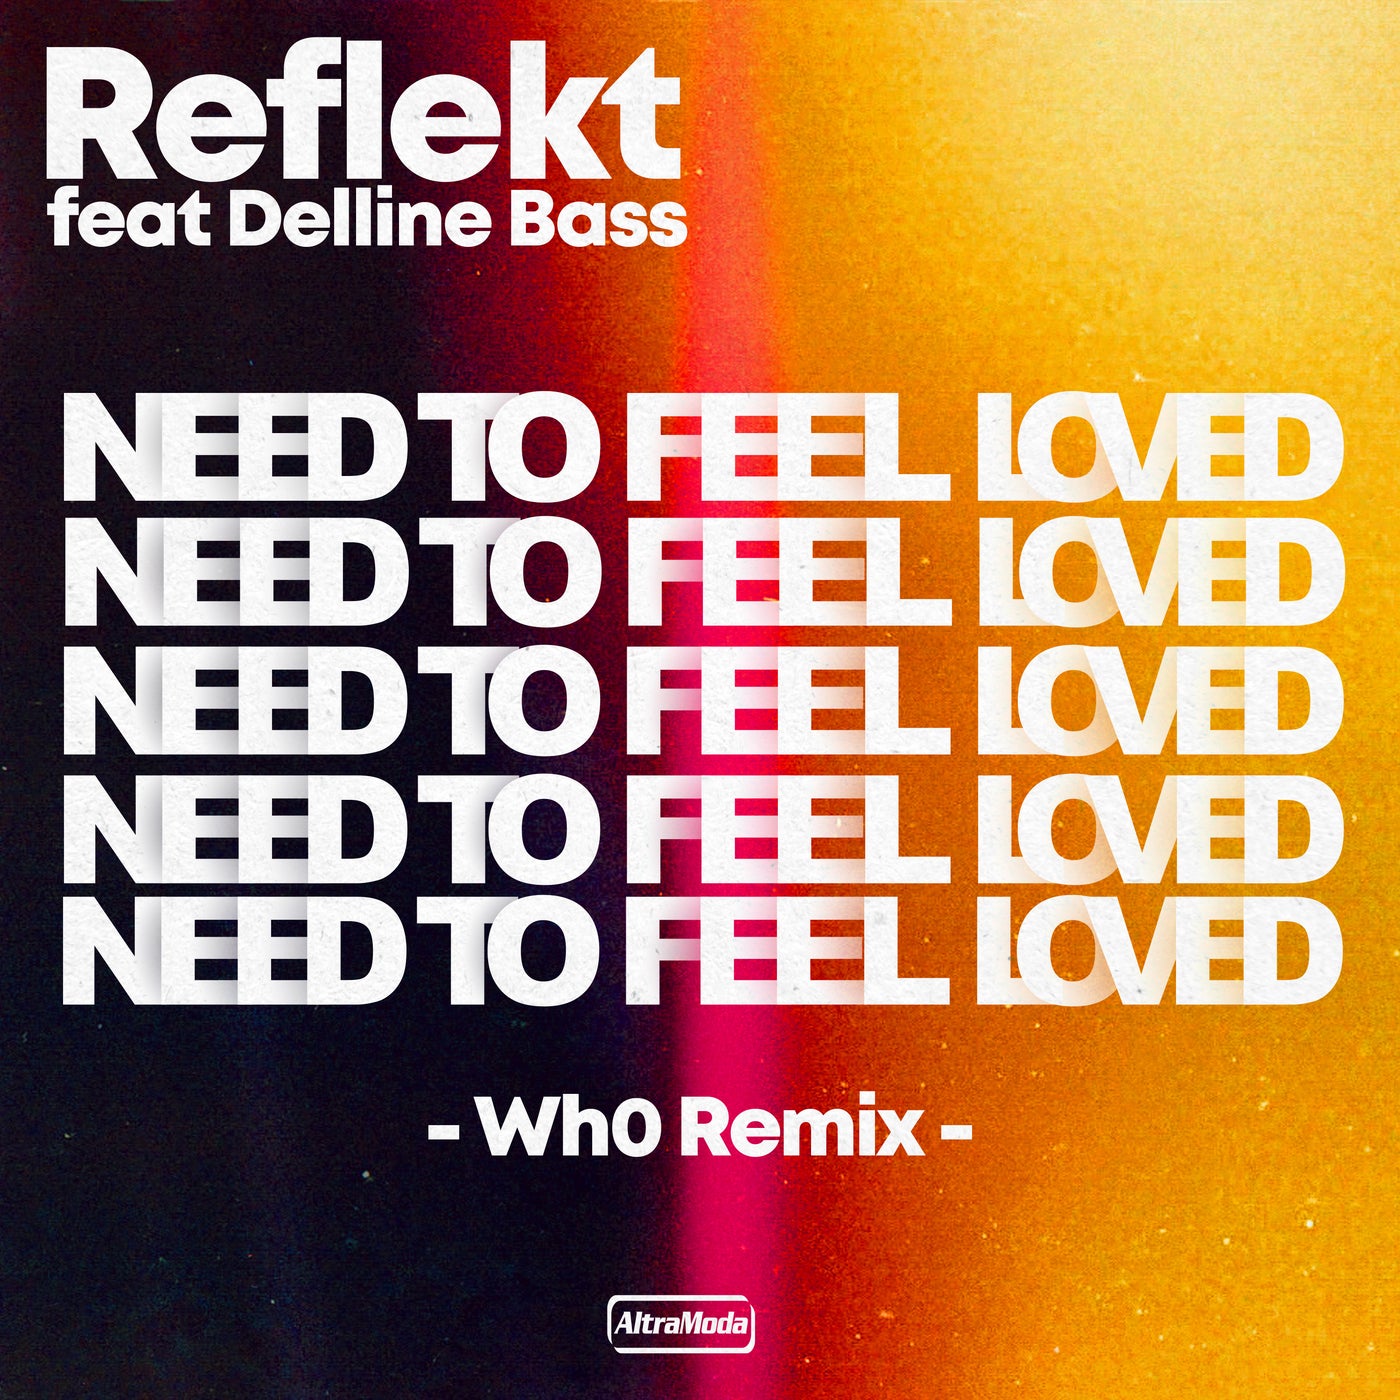 Need to feel loved reflekt feat. Reflekt featuring Delline Bass - need to feel Love. Reflekt ft. Delline Bass. Reflekt need to feel Loved. Reflekt_featuring.